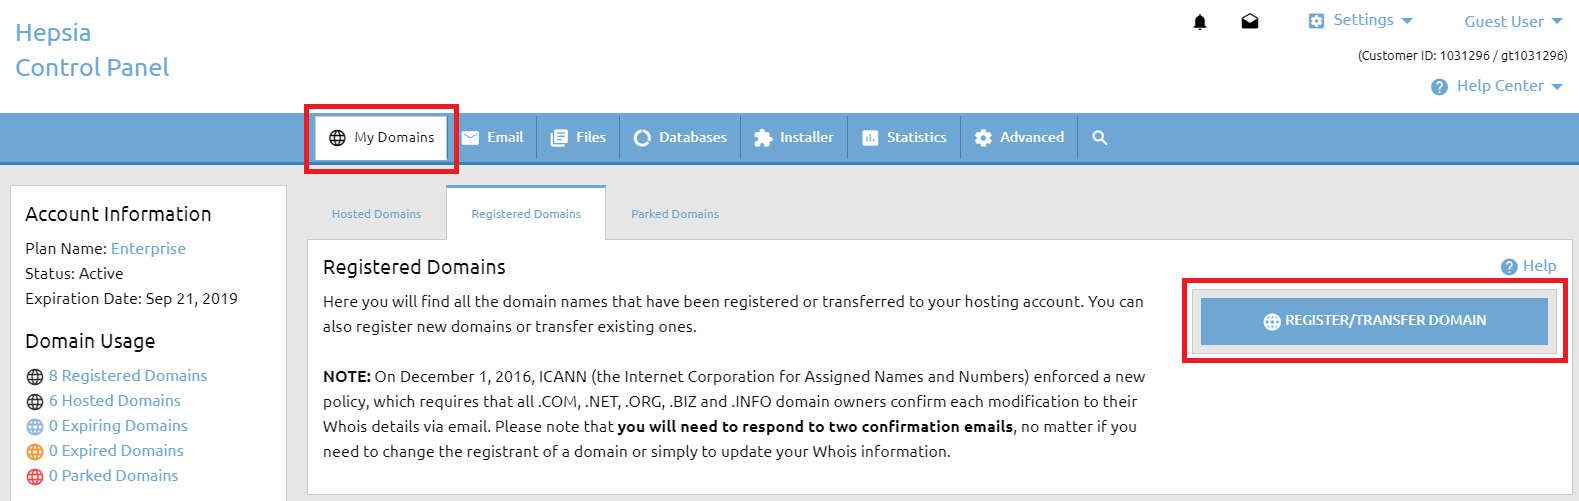 Domain Manager - Register Domain